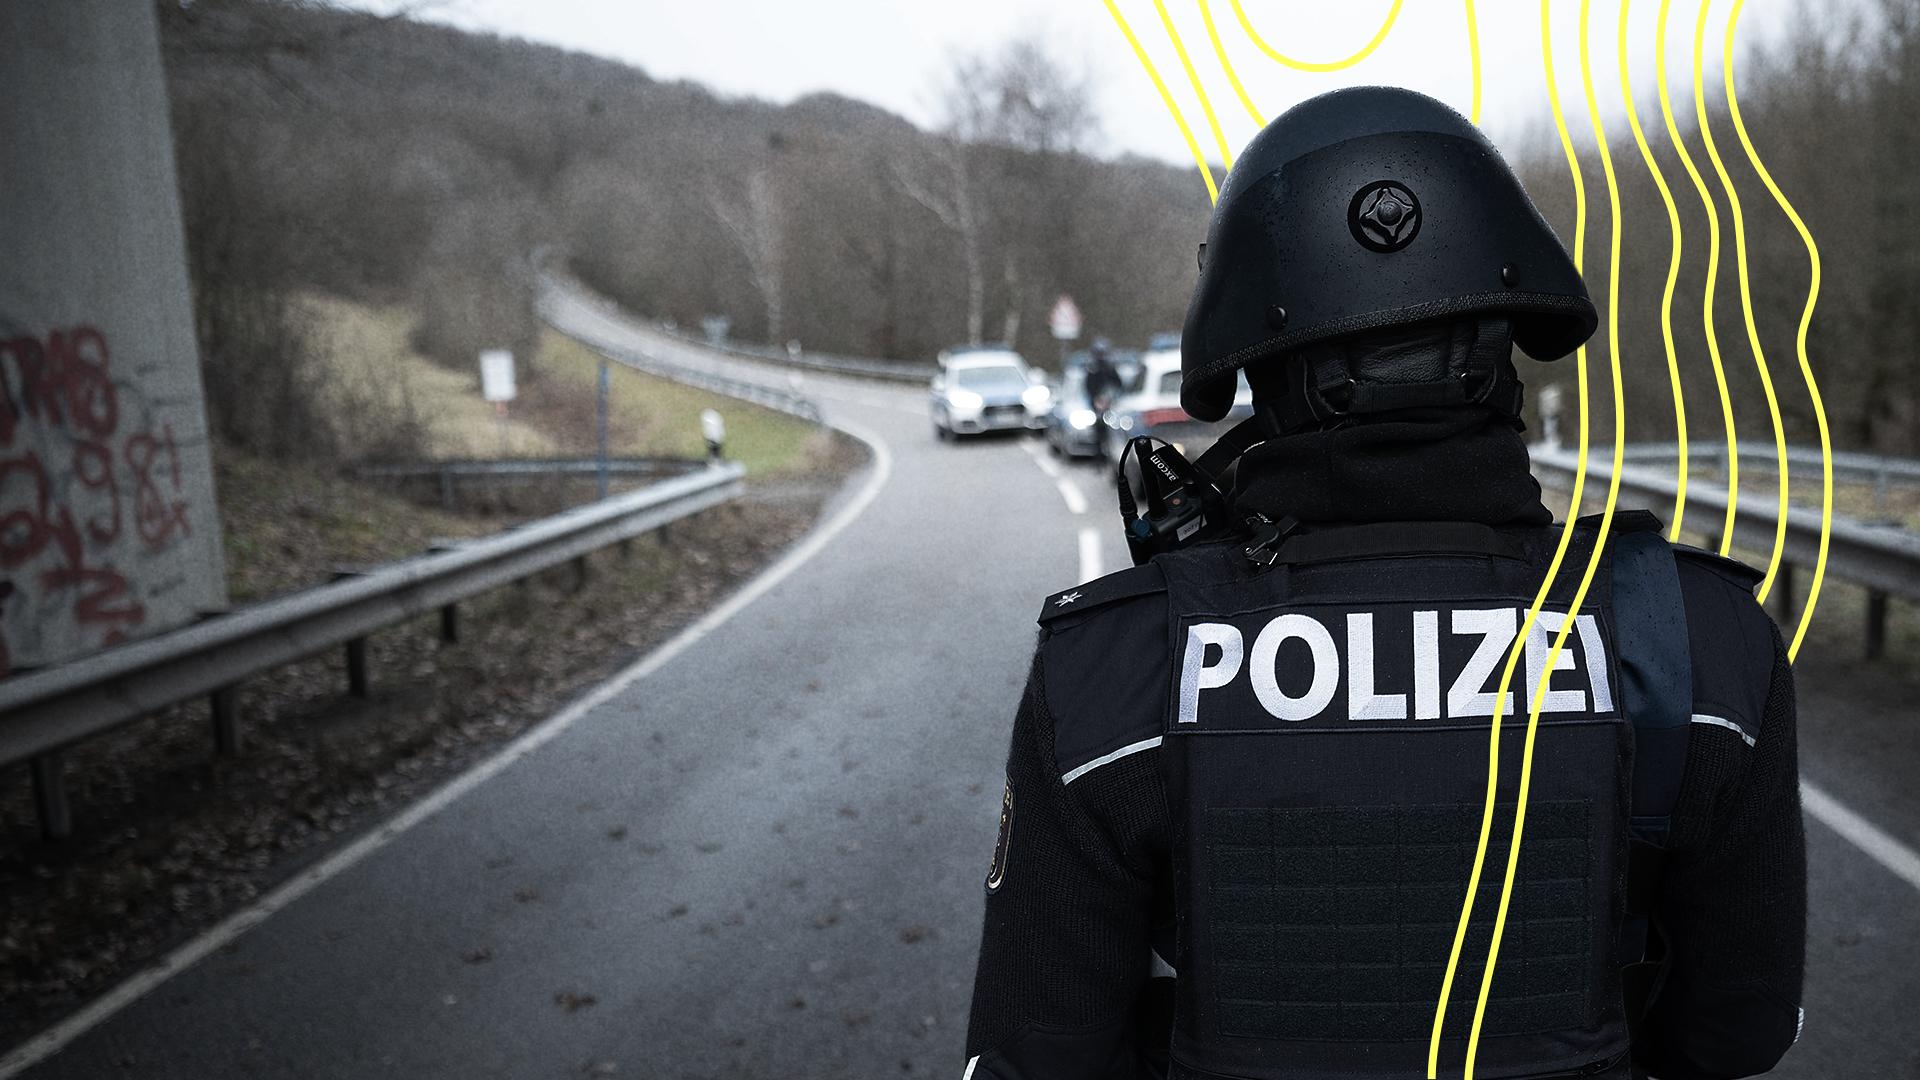 Ein Polizist in Schutzkleidung von hinten. | Picture alliance/dpa / Sebastian Gollnow